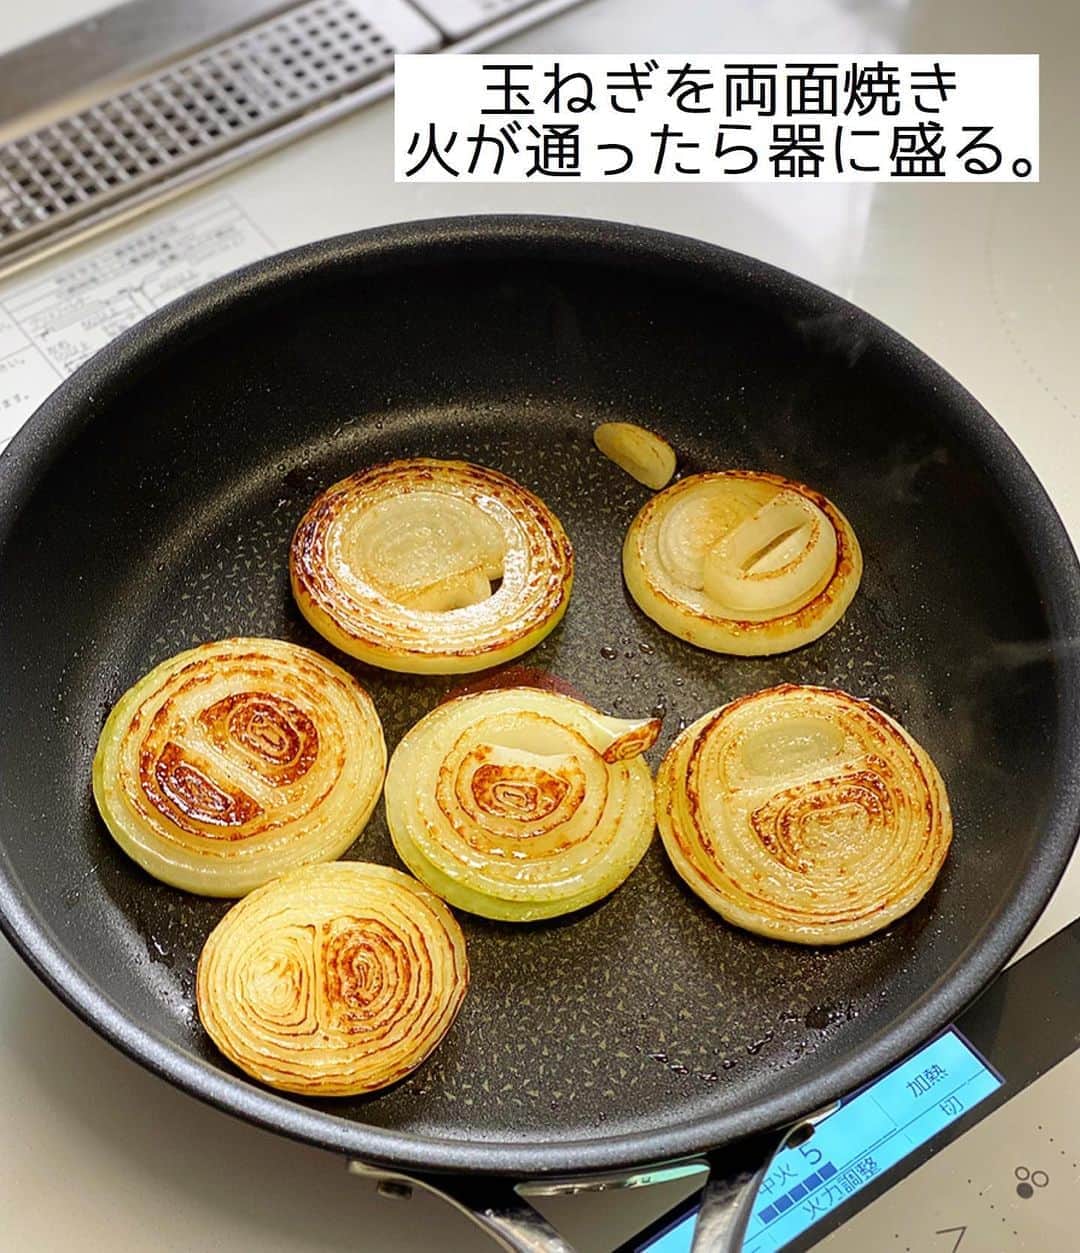 Mizuki【料理ブロガー・簡単レシピ】さんのインスタグラム写真 - (Mizuki【料理ブロガー・簡単レシピ】Instagram)「・﻿ 【レシピ】ーーーーーー﻿ ♡BBQ照りチキン♡﻿ ーーーーーーーーーーー﻿ ﻿ ﻿ ﻿ おはようございます(*^^*)﻿ ﻿ 今日ご紹介させていただくのは﻿ \\ BBQ照りチキン //﻿ こんがり焼いた鶏肉に﻿ ケチャップベースのソースを合わせて﻿ テリッテリに仕上げました(*´艸`)﻿ 甘めのBBQソースは﻿ きっとお子さんが好きな味ですよ〜♡﻿ ﻿ 付け合わせの玉ねぎソテーも含め﻿ フライパンひとつでできるので﻿ よかったらお試し下さいね(*^^*)﻿ ﻿ ﻿ ﻿ ーーーーーーーーーーーーーーーーーーーー﻿ 【2人分】﻿ 鶏もも肉...大1枚(300g)﻿ 塩こしょう...少々﻿ 薄力粉...適量﻿ 玉ねぎ...1個﻿ サラダ油...小2﻿ ●ケチャップ...大3﻿ ●中濃ソース・はちみつ...各大1﻿ (好みで)粗挽き黒こしょう...少々﻿ ﻿ 1.鶏肉は身の厚い部分を開き、塩こしょうを振って薄力粉をまぶす。玉ねぎは1cm厚さの輪切りにする。﻿ 2.フライパンにサラダ油小1を中火で熱し、玉ねぎを両面焼いて火を通し、器に盛る。﻿ 3.フライパンに残りのサラダ油を足して鶏肉を焼く。焼き色が付いたら裏返し、フタをして弱めの中火で5分蒸し焼きにする。火が通ったら●を加えて煮からめる。﻿ 4.3を食べやすい大きさに切って器に盛り、黒こしょうを振る。﻿ ーーーーーーーーーーーーーーーーーーーー﻿ ﻿ ﻿ ﻿ 《ポイント》﻿ ♦︎お好みで玉ねぎはなくてもOKです♩その場合は味が濃くなるので、葉物野菜と盛り合わせるのもおすすめ♩﻿ ♦︎鶏肉はしっかり焼き色をつけてから裏返して下さい♩﻿ ♦︎はちみつが入っているので1歳未満のお子さんには食べさせないように注意して下さい☆﻿ ﻿ ﻿ ﻿ ﻿ ﻿ ﻿ ﻿ ﻿ 🆕🆕🆕🆕🆕🆕🆕🆕🆕🆕﻿ おかげさまで［今どき和食］が﻿ 8刷重版となりました(涙)﻿ 本当にありがとうございます！！﻿ 皆さんのおかげです（ ; ; ）💕﻿ 🆕🆕🆕🆕🆕🆕🆕🆕🆕🆕﻿ ↓ ↓ ↓﻿ ＿＿＿＿＿＿＿＿＿＿＿＿＿＿＿＿＿＿＿﻿ 📕8刷重版しました📕﻿ 簡単・時短！ 毎日のごはんがラクになる﻿ ✨🦋 【 #Mizukiの今どき和食 】🦋✨﻿ ＿＿＿＿＿＿＿＿＿＿＿＿＿＿＿＿＿＿＿﻿ なるべく少ない材料で﻿ 手間も時間も省きながら﻿ 簡単にできるおいしい和食レシピ♩﻿ 簡単に失敗なくマスターできる一冊で﻿ もっと気軽に、カジュアルに﻿ 和食を楽しんで下さいね(*^^*)﻿ ＿＿＿＿＿＿＿＿＿＿＿＿＿＿＿＿＿＿＿﻿ ﻿ ﻿ ﻿ ＿＿＿＿＿＿＿＿＿＿＿＿＿＿＿＿＿＿＿﻿ 🎀6刷重版しました🎀﻿ 混ぜて焼くだけ。はじめてでも失敗しない！﻿ 【#ホットケーキミックスのお菓子 】﻿ ﻿ 一冊まるっとホケミスイーツ♩﻿ 普段のおやつから﻿ 特別な日にも使えるレシピを﻿ この一冊に詰め込みました(*^^*)﻿ ホットケーキミックスを使えば﻿ 簡単に本格的なお菓子が作れますよ♡﻿ ＿＿＿＿＿＿＿＿＿＿＿＿＿＿＿＿＿﻿ ﻿ ﻿ ﻿ ﻿ ￣￣￣￣￣￣￣￣￣￣￣￣￣￣￣￣￣￣﻿ レシピを作って下さった際や﻿ レシピ本についてのご投稿には﻿ タグ付け( @mizuki_31cafe )して﻿ お知らせいただけると嬉しいです😊💕﻿ ＿＿＿＿＿＿＿＿＿＿＿＿＿＿＿＿＿＿﻿ ﻿ ﻿ ﻿ ﻿ ﻿ #鶏肉#バーベキューチキン#BBQ#玉ねぎ﻿ #Mizuki#簡単レシピ#時短レシピ#節約レシピ#料理#レシピ#フーディーテーブル#マカロニメイト#おうちごはん#デリスタグラマー#料理好きな人と繋がりたい#食べ物#料理記録#おうちごはんlover#写真好きな人と繋がりたい#foodpic#cooking#recipe#lin_stagrammer#foodporn#yummy#BBQ照りチキンm」9月3日 6時59分 - mizuki_31cafe